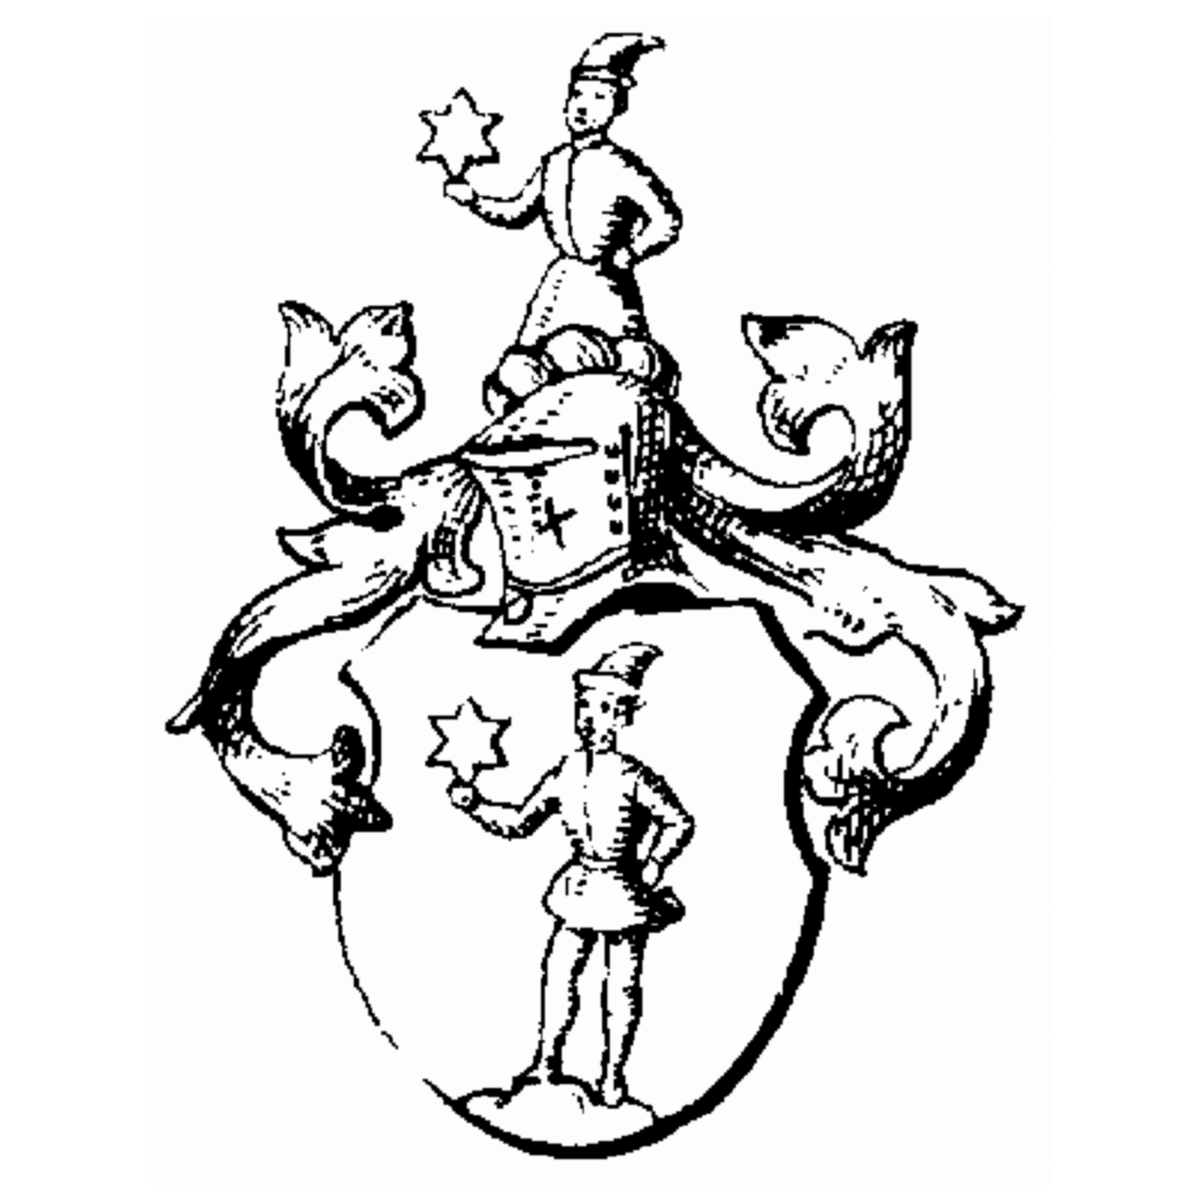 Wappen der Familie Meile